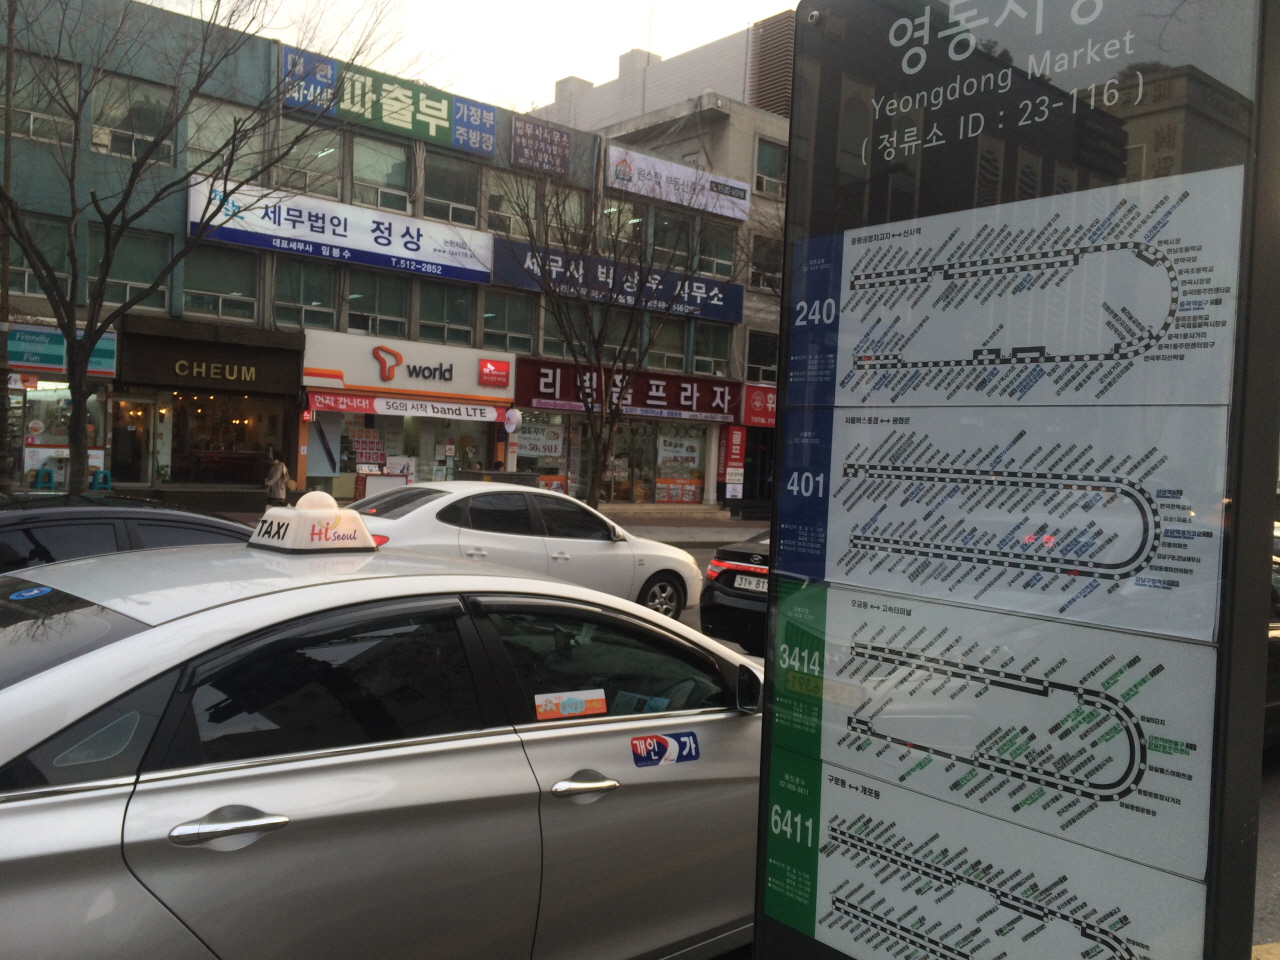 논현 1동에 정차하는 버스. 간선버스 외에도 광역버스와 마을버스 개수가 많아서 서울과 수도권 이동이 용이하다.